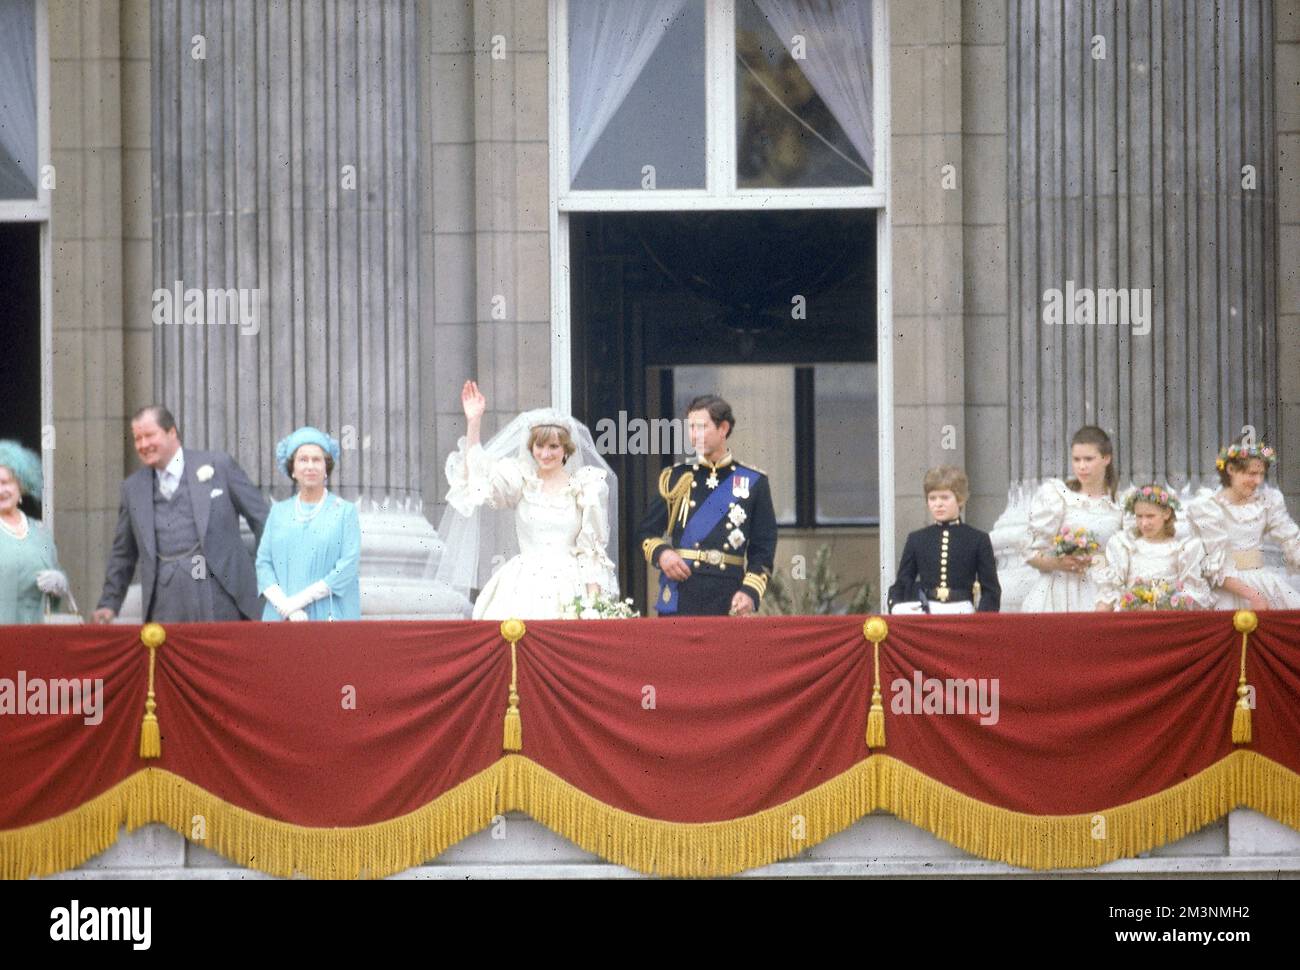 Der frisch verheiratete Prinz und die Prinzessin von Wales erscheinen zusammen auf dem Balkon des Buckingham Palace und winken den wartenden Menschenmassen nach ihrer Hochzeit in St. Paul's Cathedral am 29. Juli 1981. Datum: 1981 Stockfoto